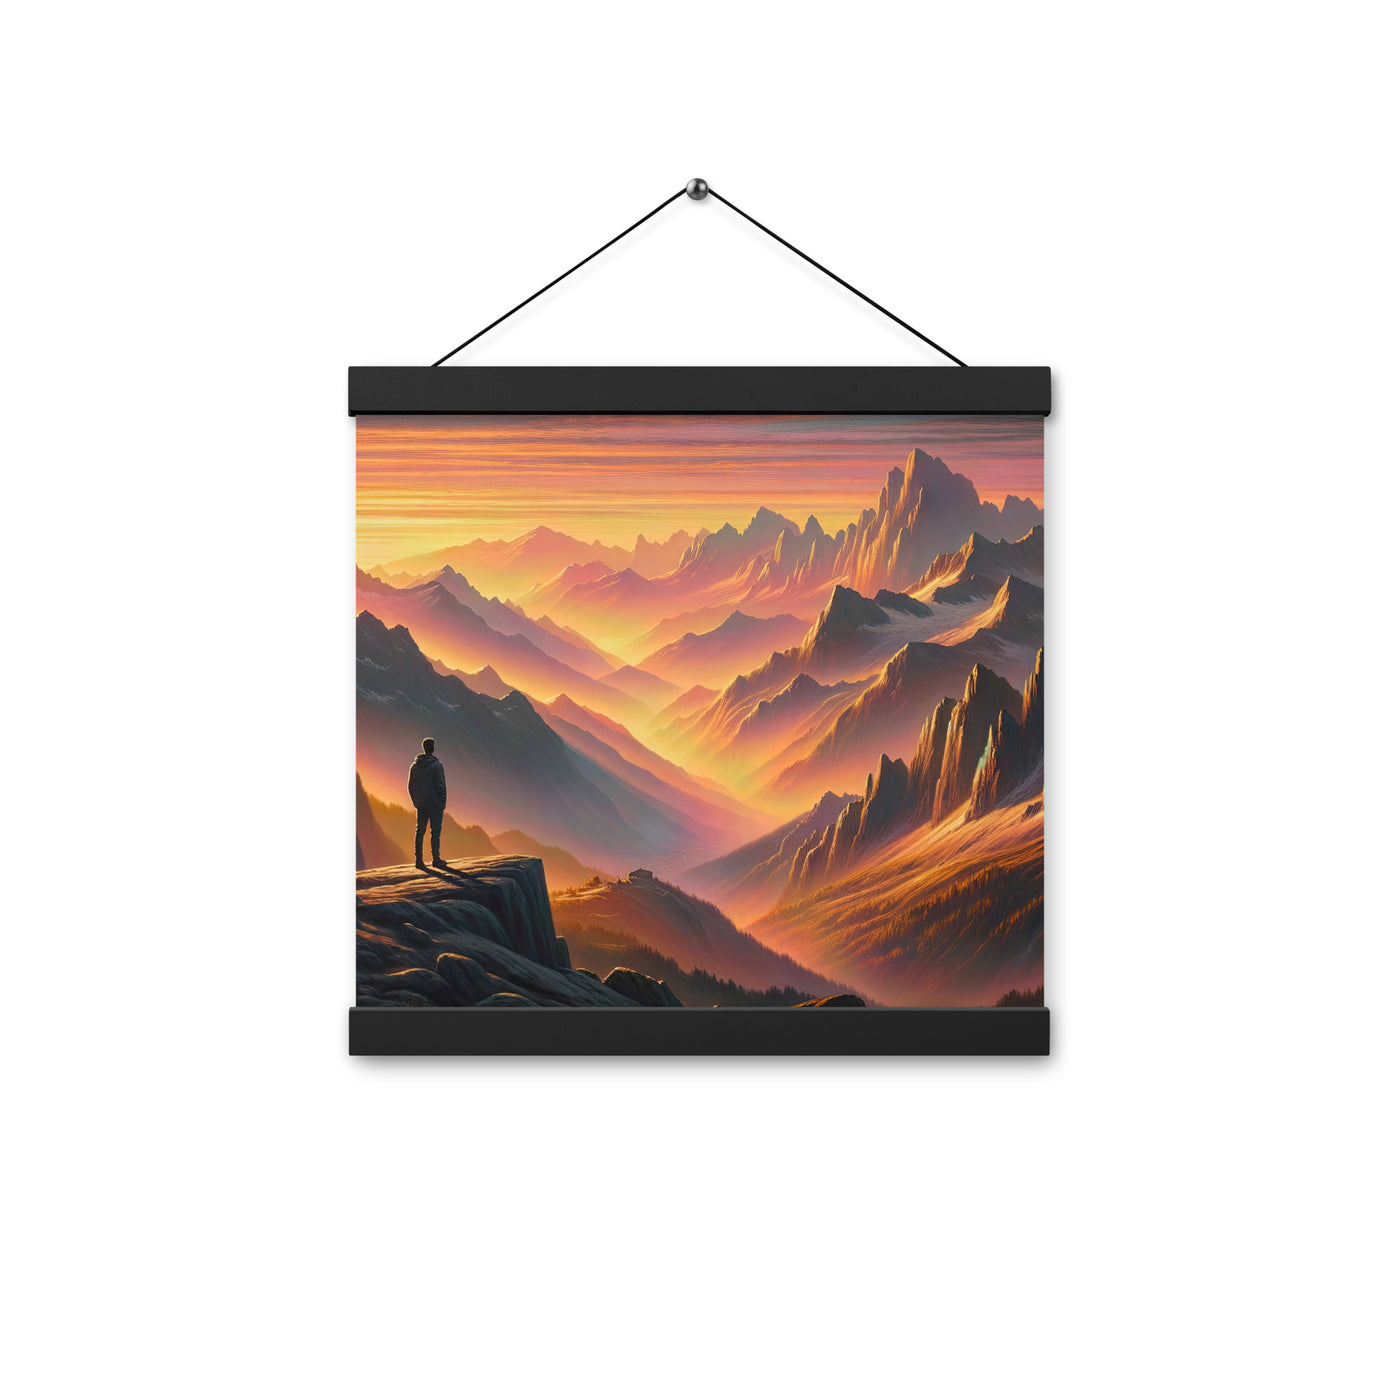 Ölgemälde der Alpen in der goldenen Stunde mit Wanderer, Orange-Rosa Bergpanorama - Premium Poster mit Aufhängung wandern xxx yyy zzz 30.5 x 30.5 cm